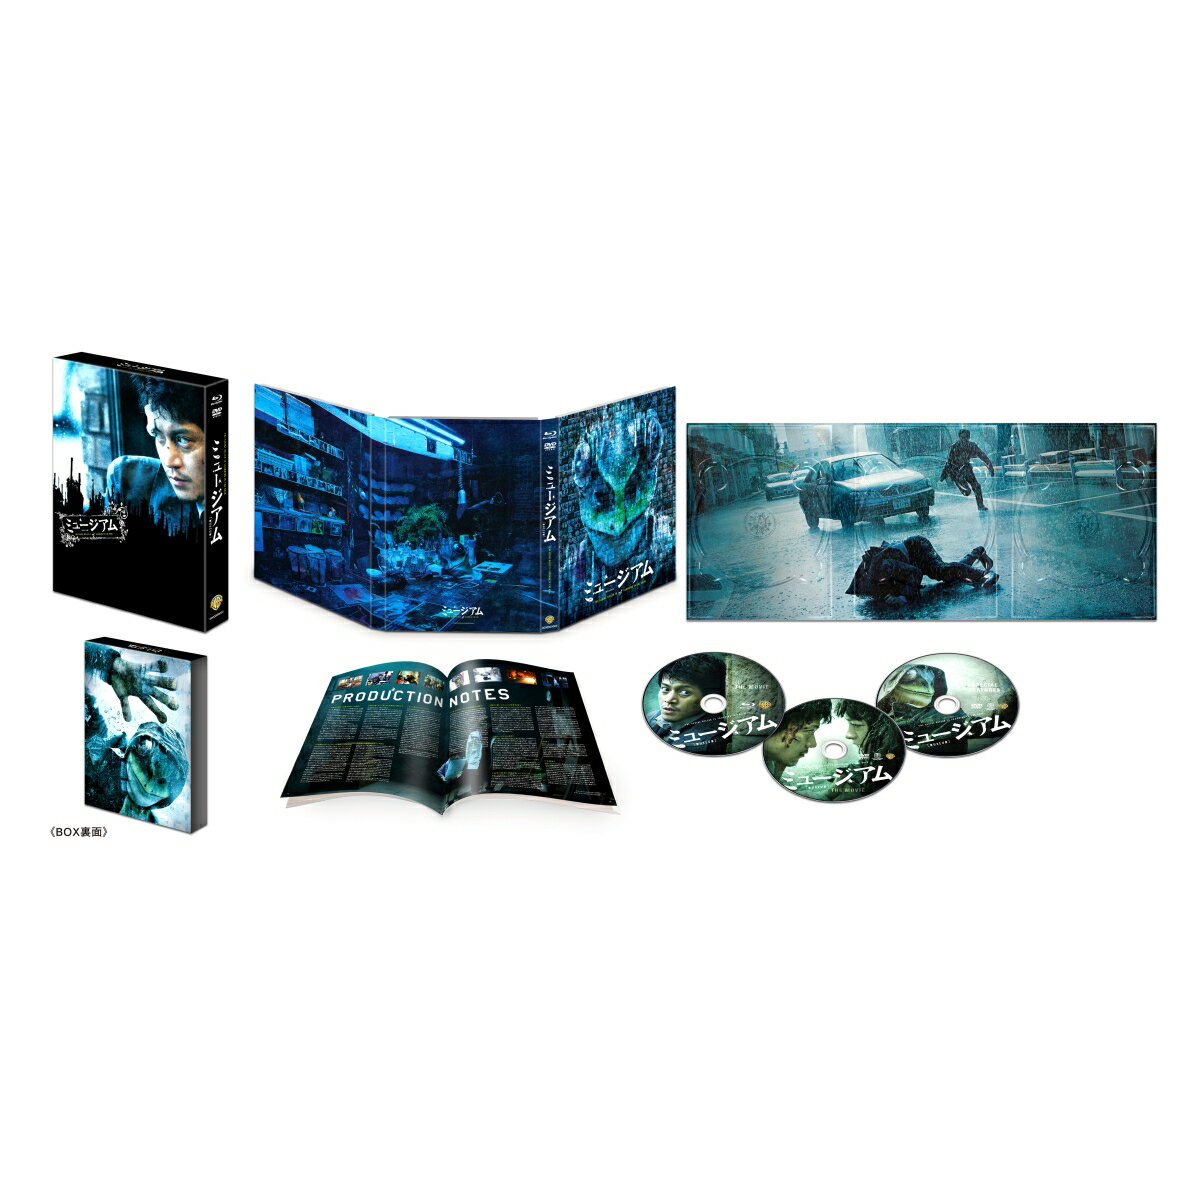 ミュージアム ブルーレイ&DVDセット プレミアム・エディション(3枚組)(初回仕様)【Blu-ray】